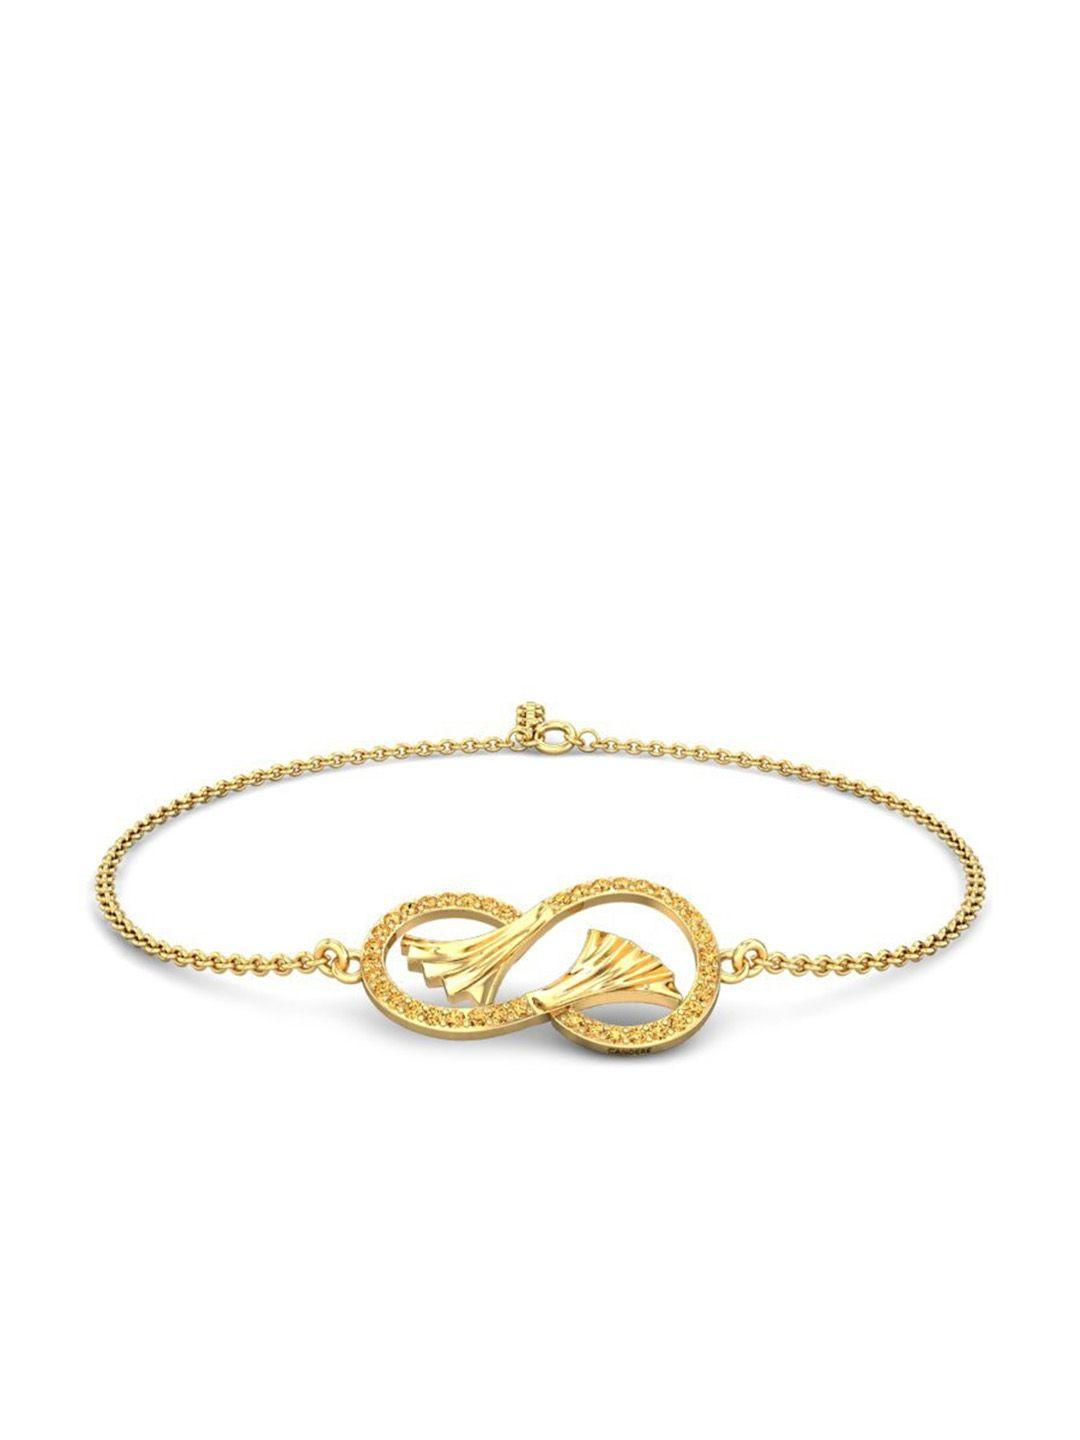 candere-a-kalyan-jewellers-company-14kt-gold-bracelet-3.19gm